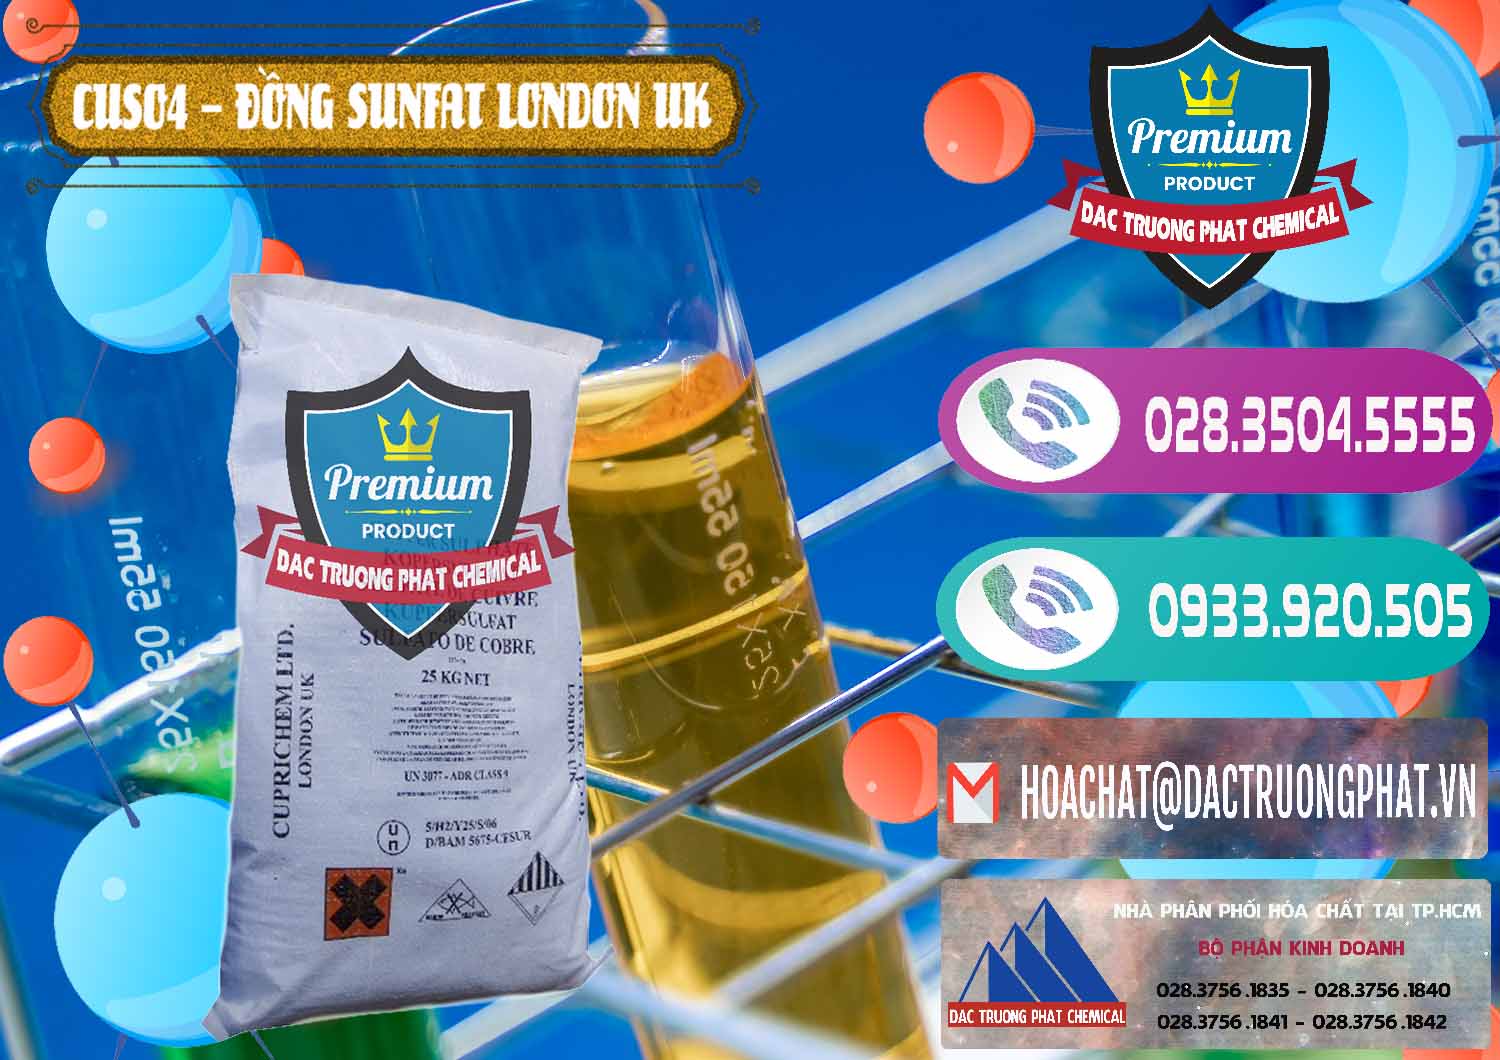 Công ty chuyên cung ứng _ bán CuSO4 – Đồng Sunfat Anh Uk Kingdoms - 0478 - Cty phân phối _ cung cấp hóa chất tại TP.HCM - hoachatxulynuoc.com